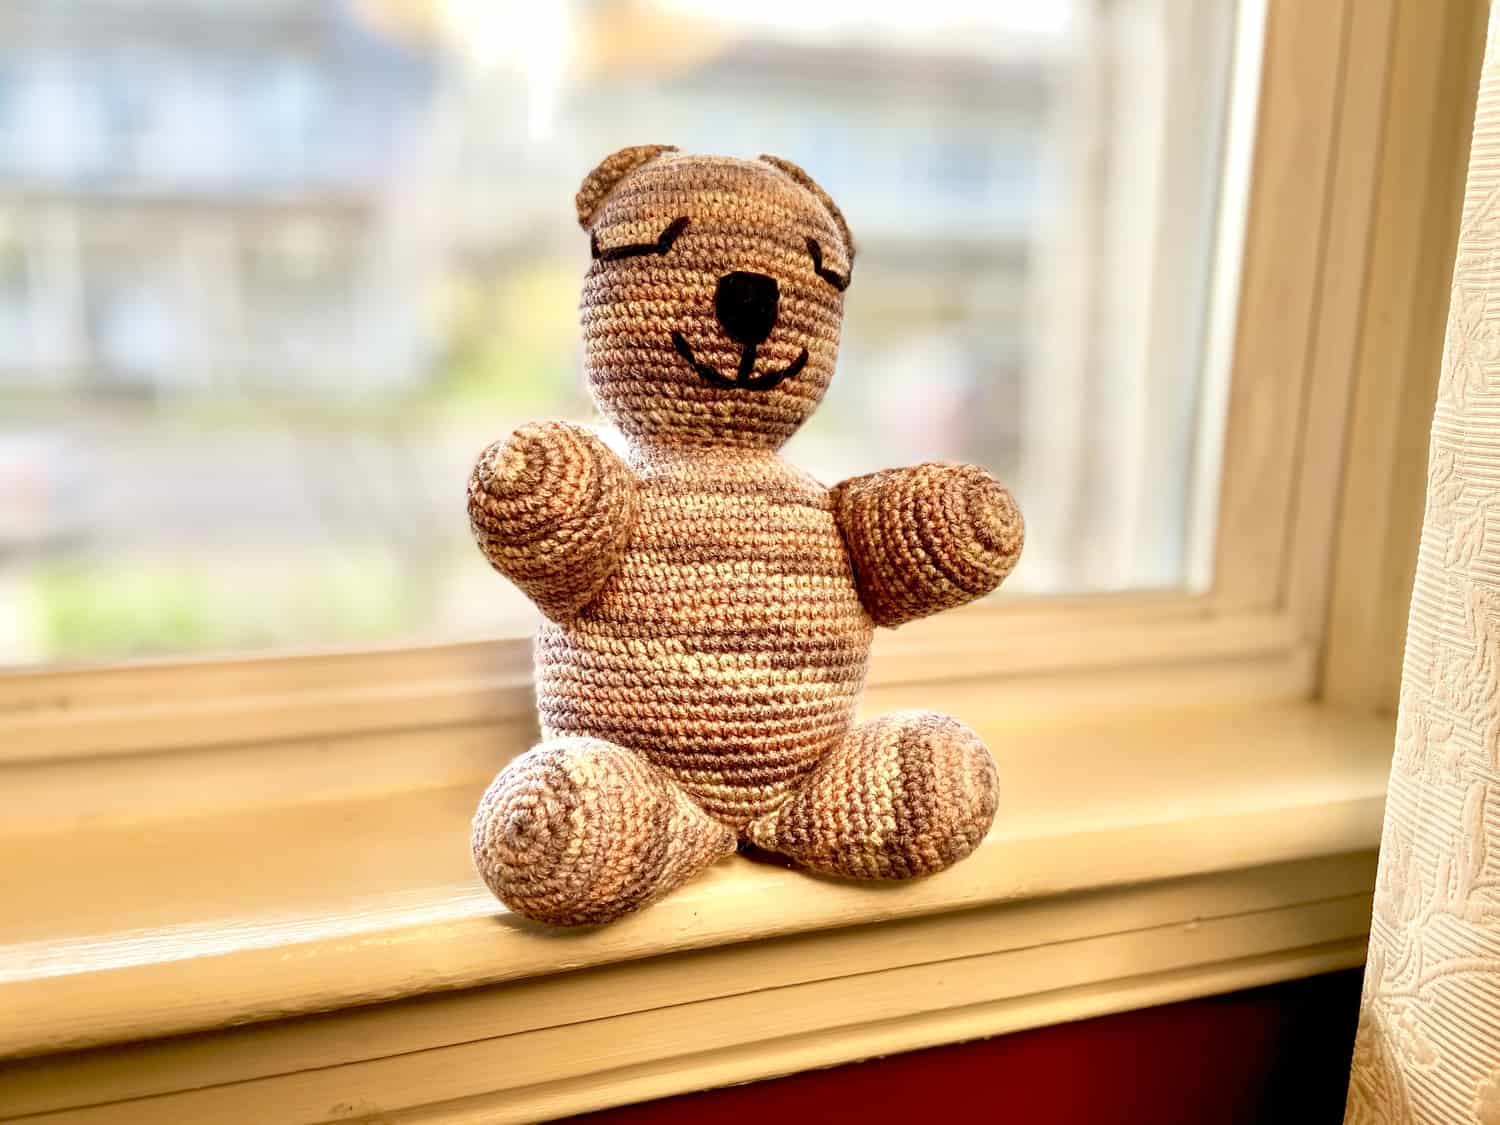 Bear sitting on a window sill.